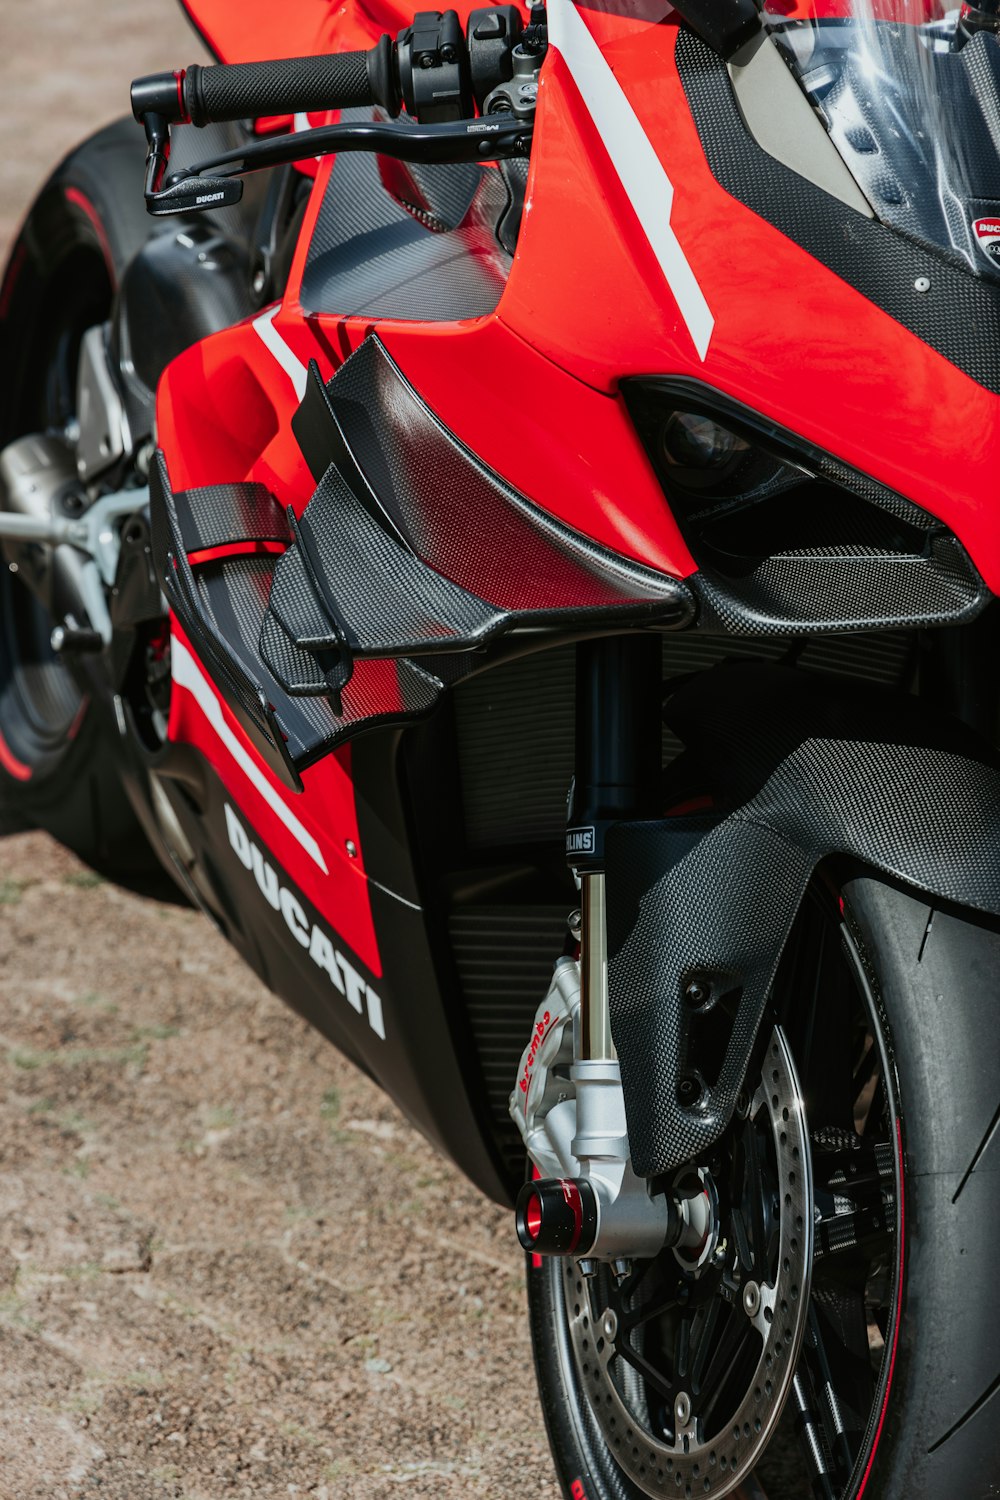 Una motocicleta roja y negra estacionada en un camino de tierra